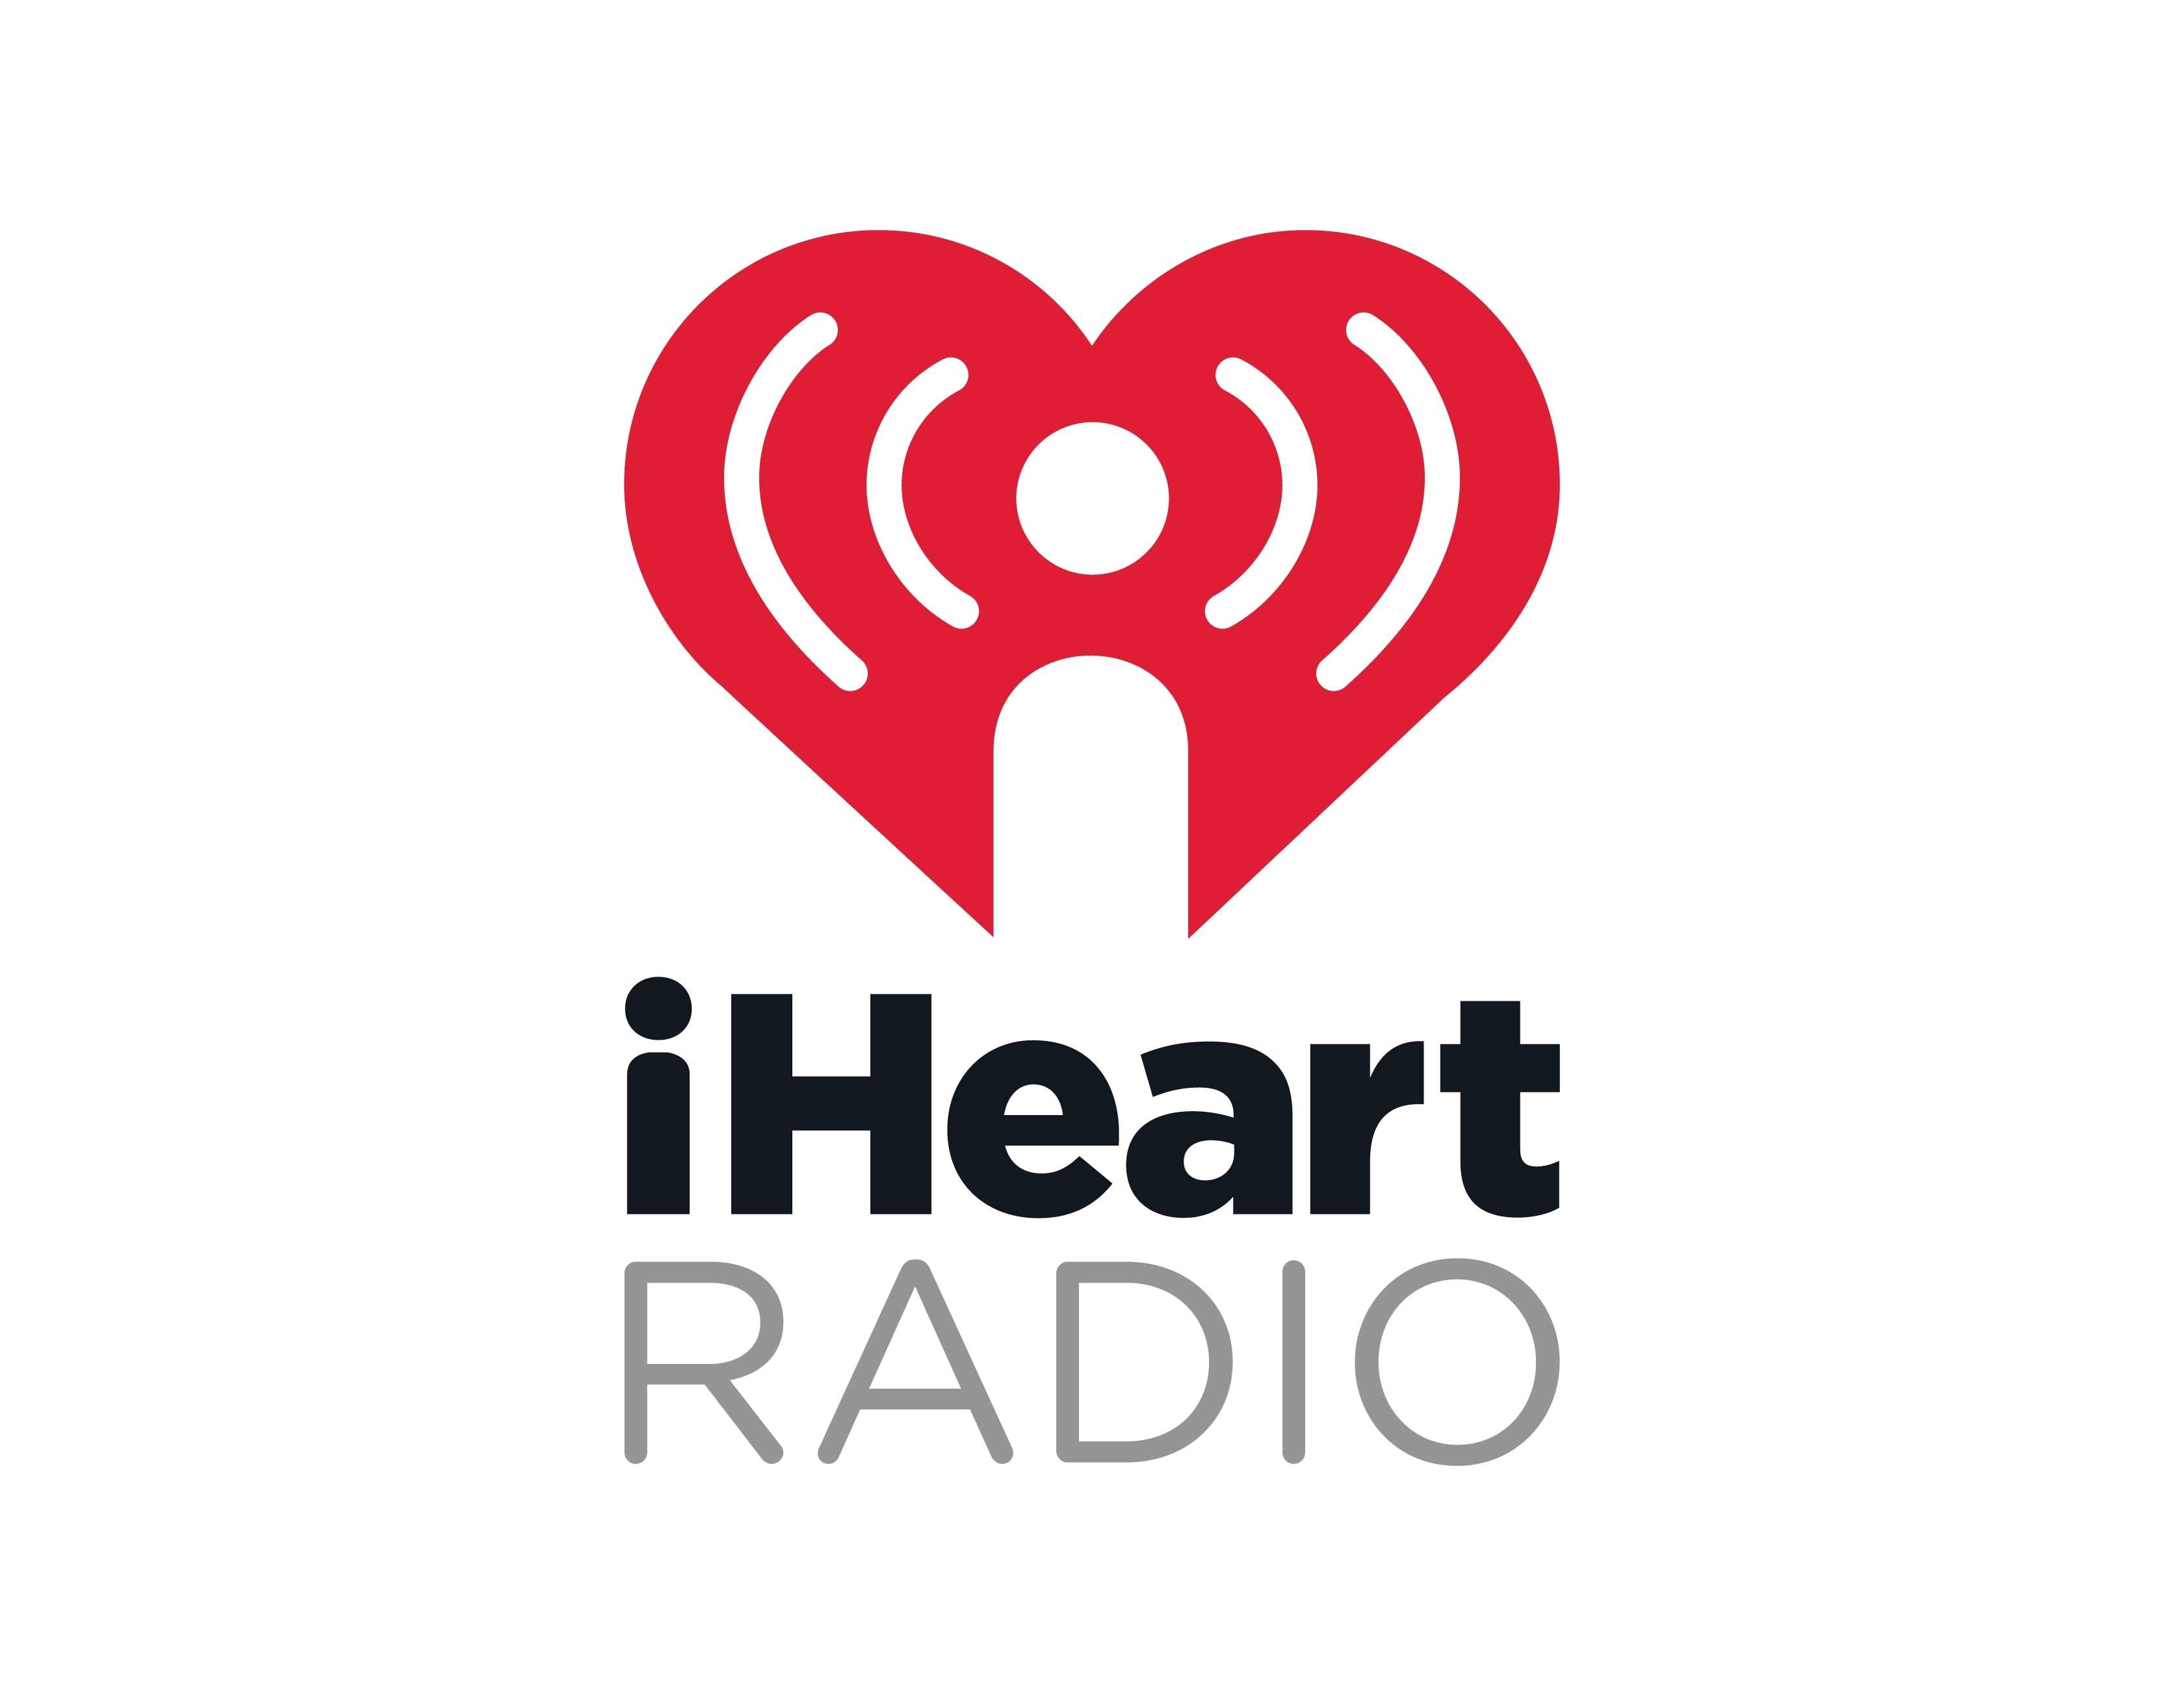 Do you really heart radio?